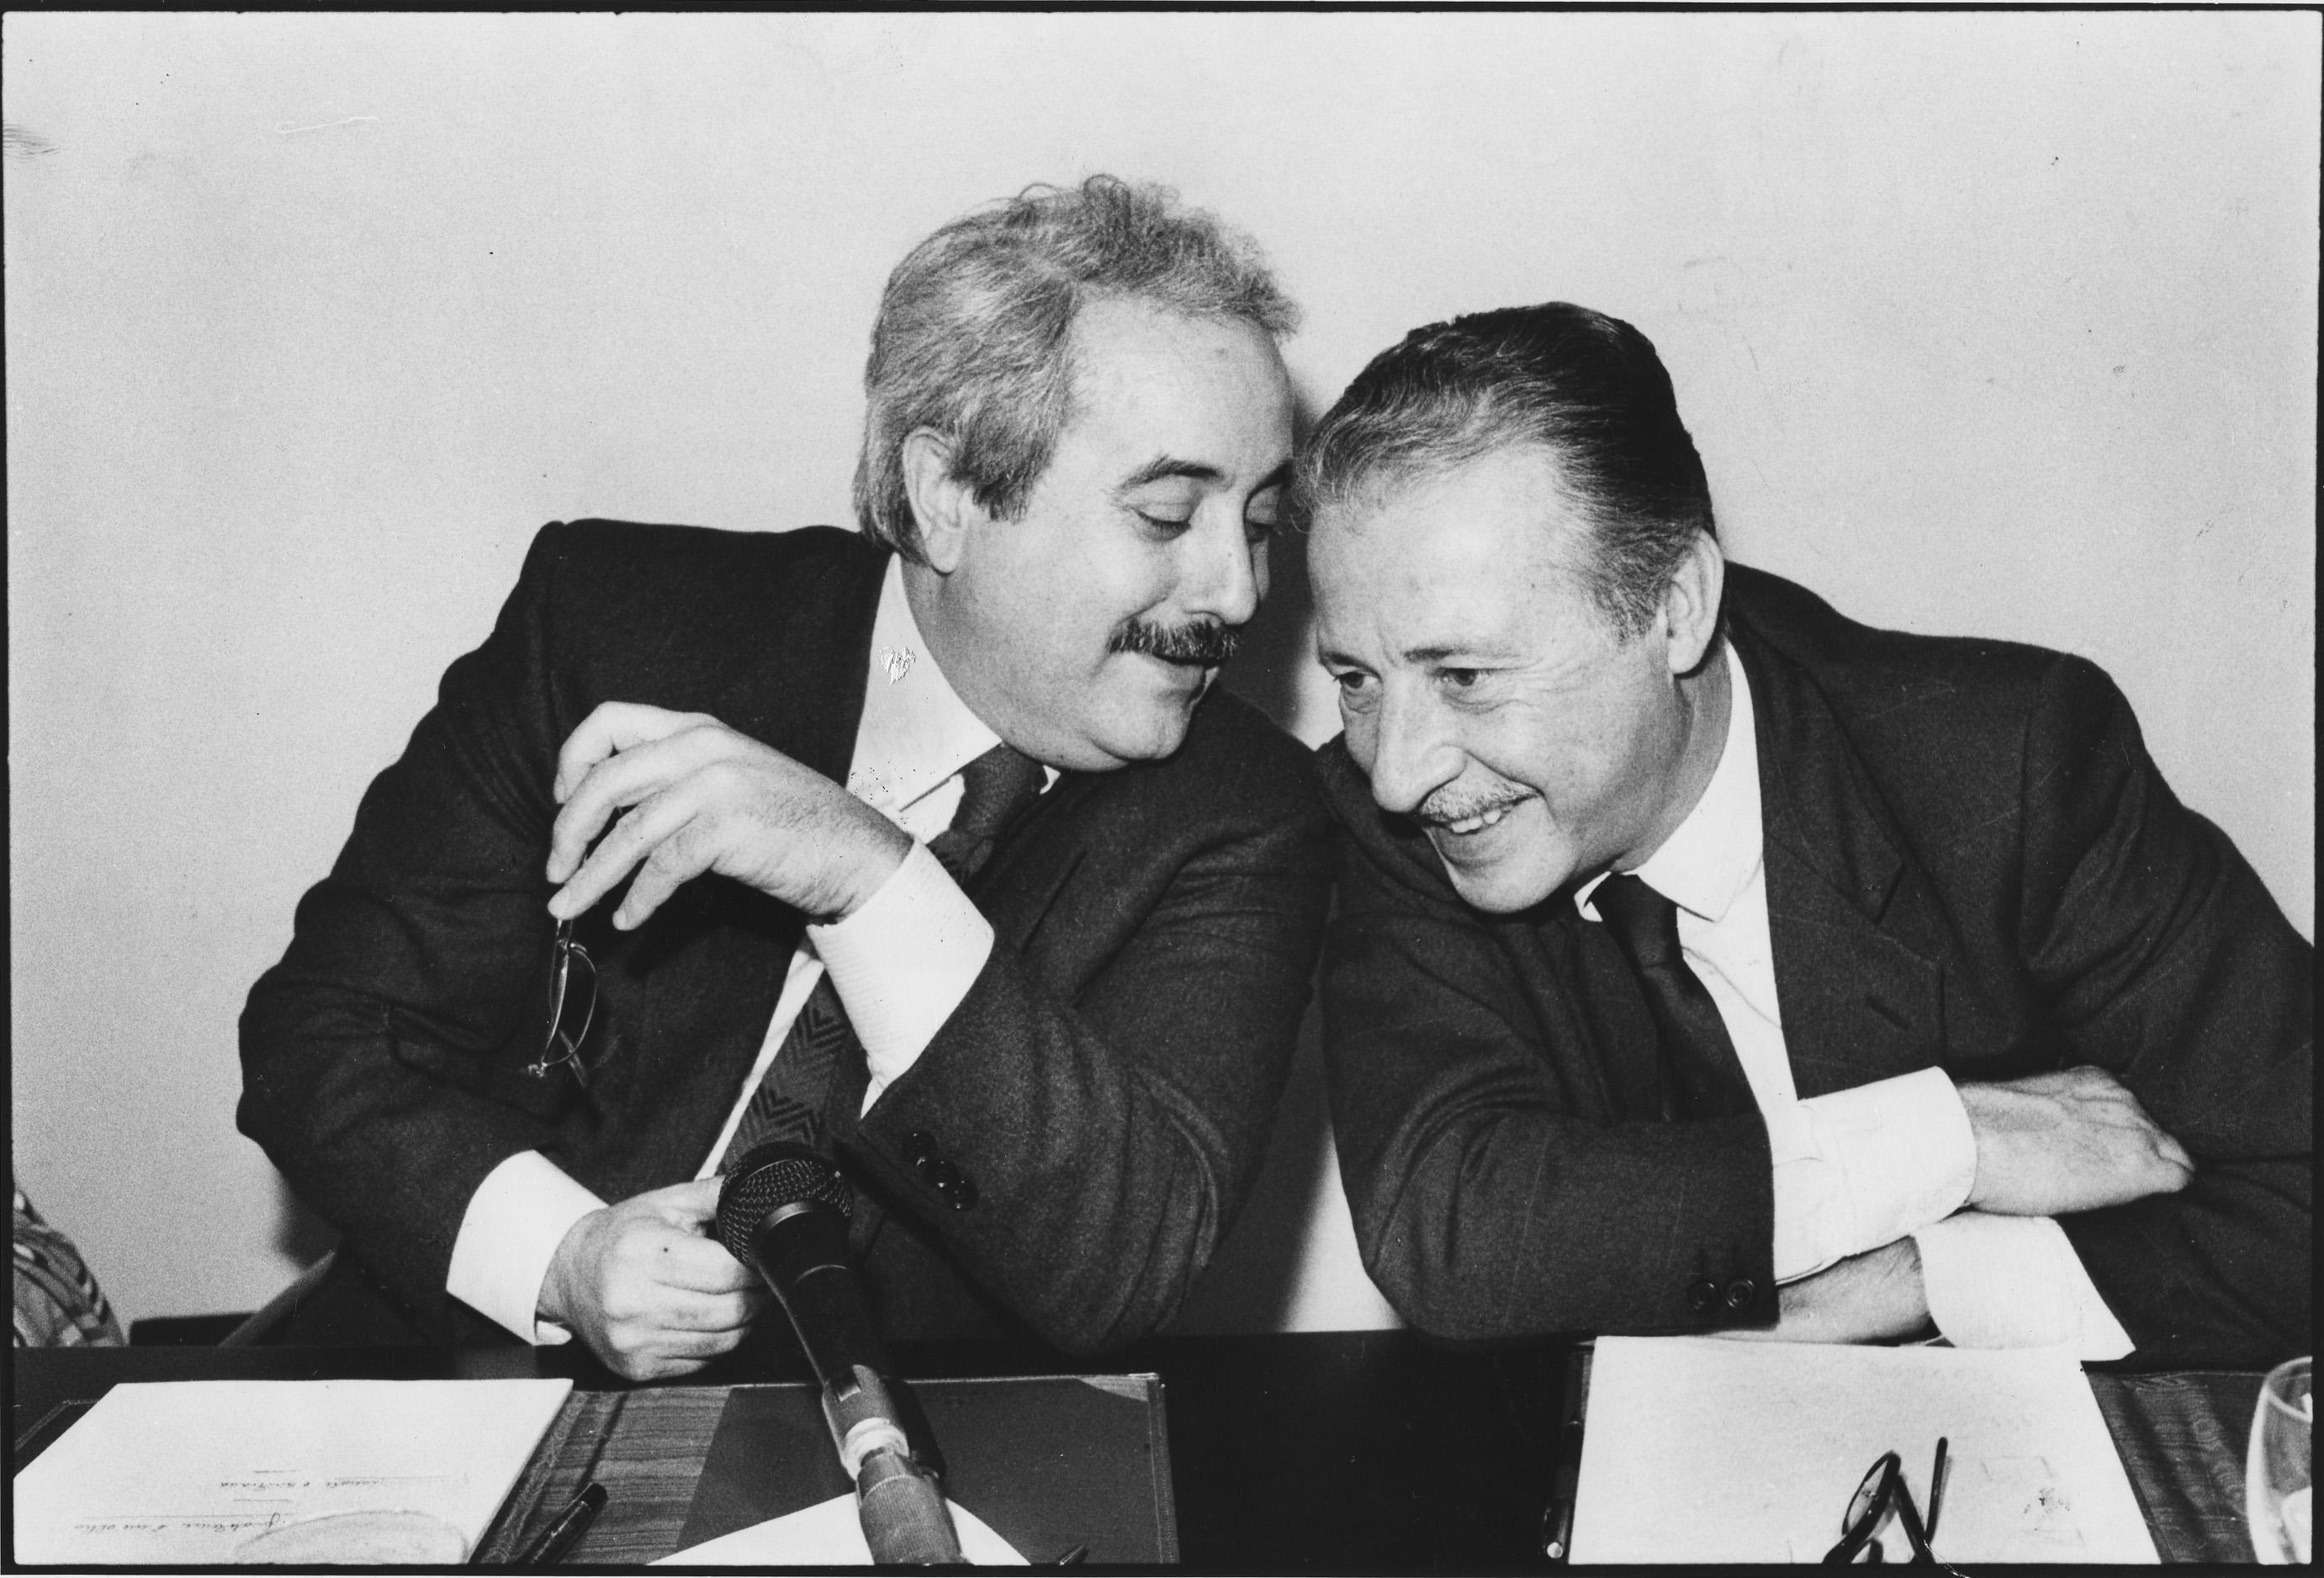 Paolo Borsellino (derecha) y Giovanni Falcone (izquierda), colegas y amigos de infancia, formaron la pareja de jueces antimafia más simbólica de Italia. Ambos murieron en atentados de Cosa Nostra en 1992.